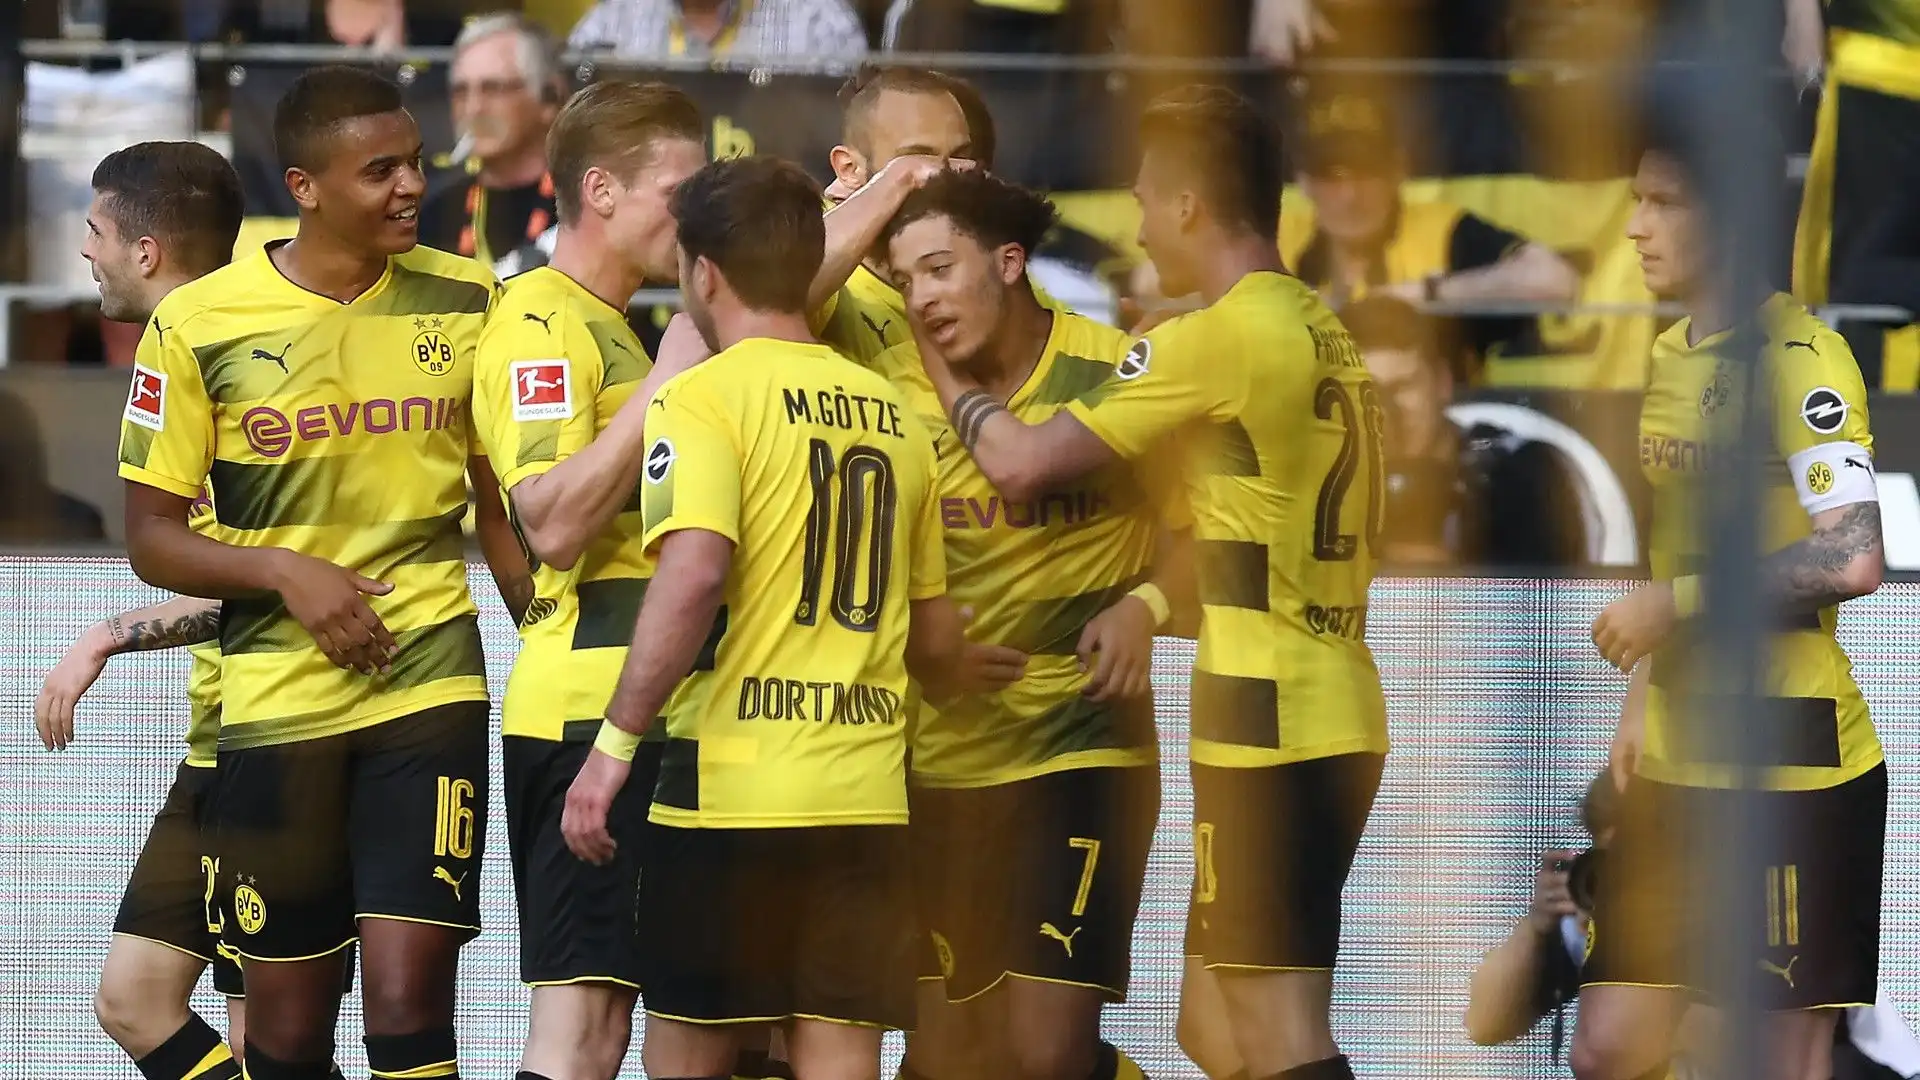 Situazione insostenibile: l'ex Borussia Dortmund vuole cambiare squadra. Foto